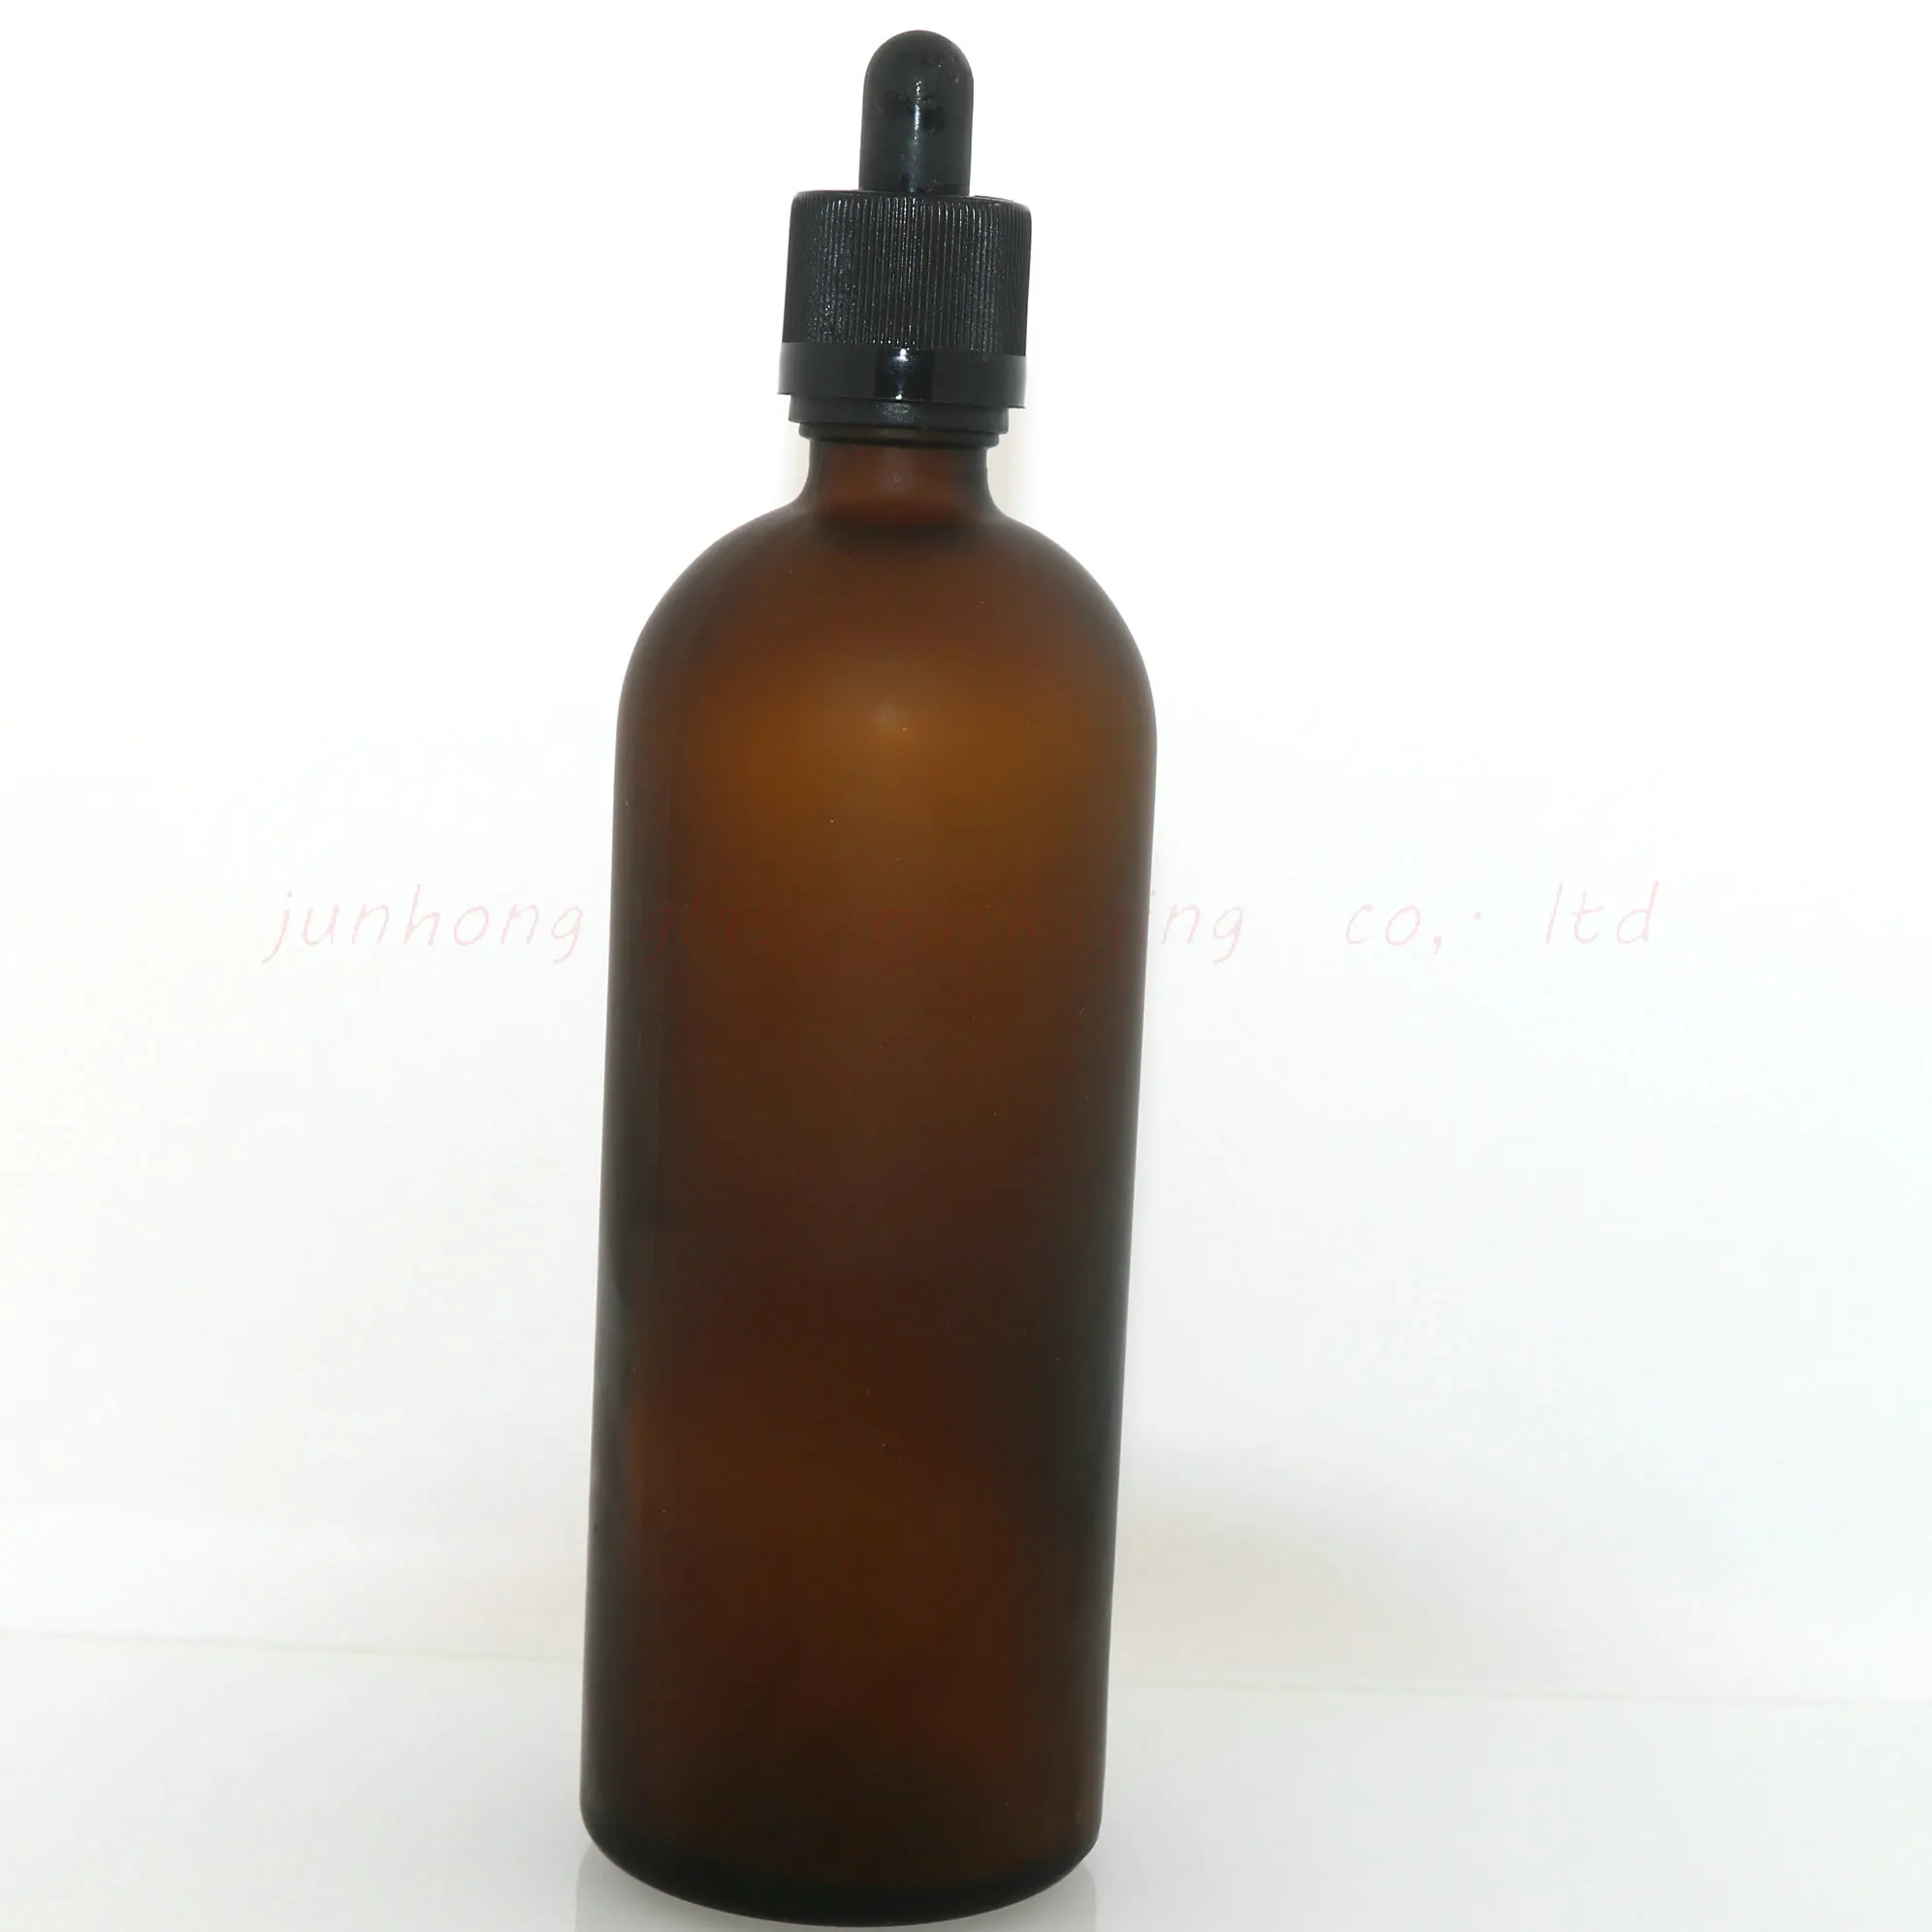 glass massage oil bottles